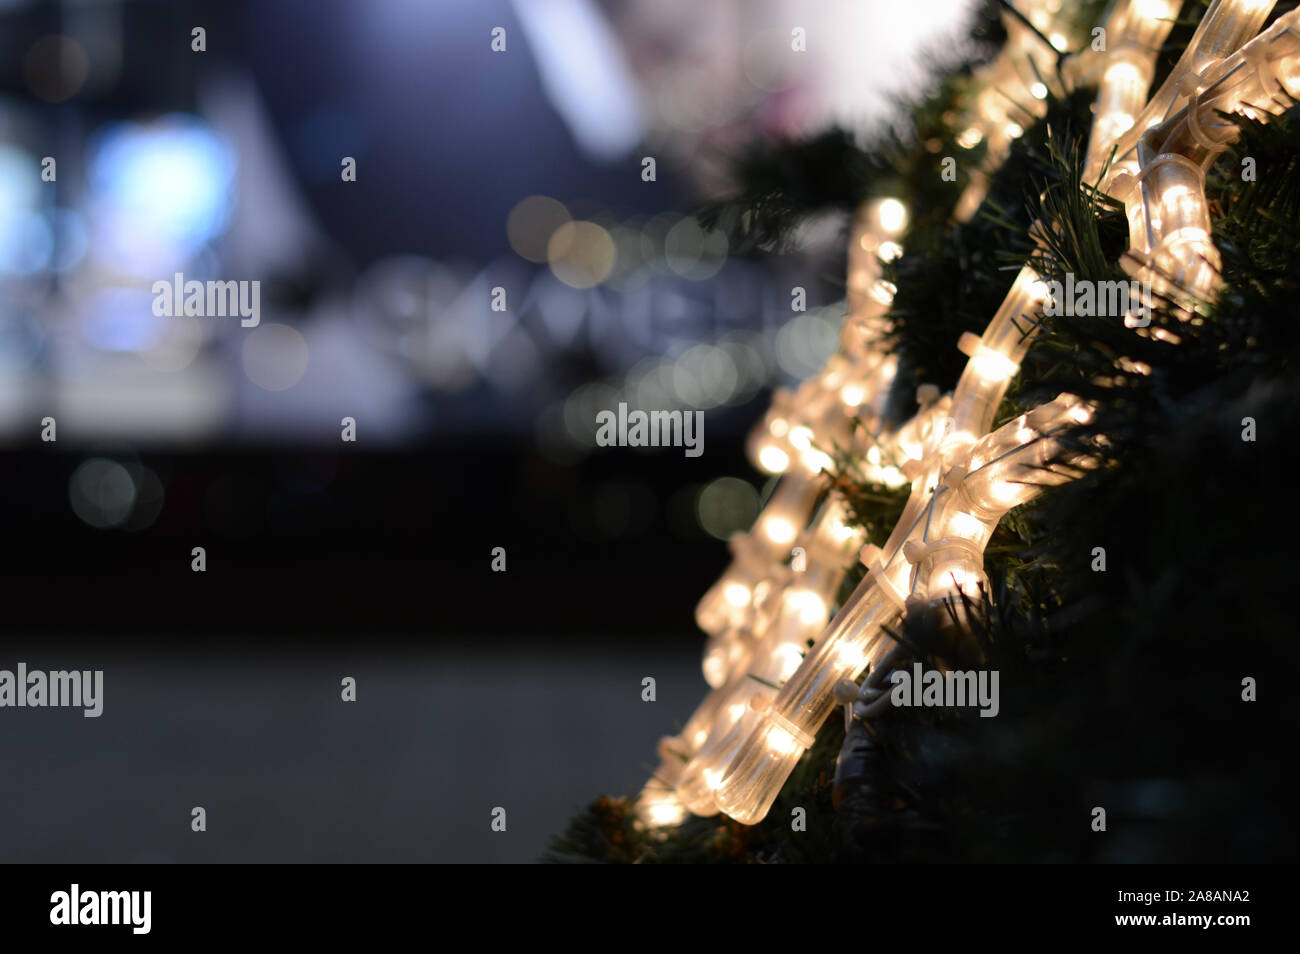 Sfocate e non focalizzata, astratta di festa con sfondo bianco led al neon  con il simbolo del fiocco di neve su di un albero di Natale, di notte le  luci della città